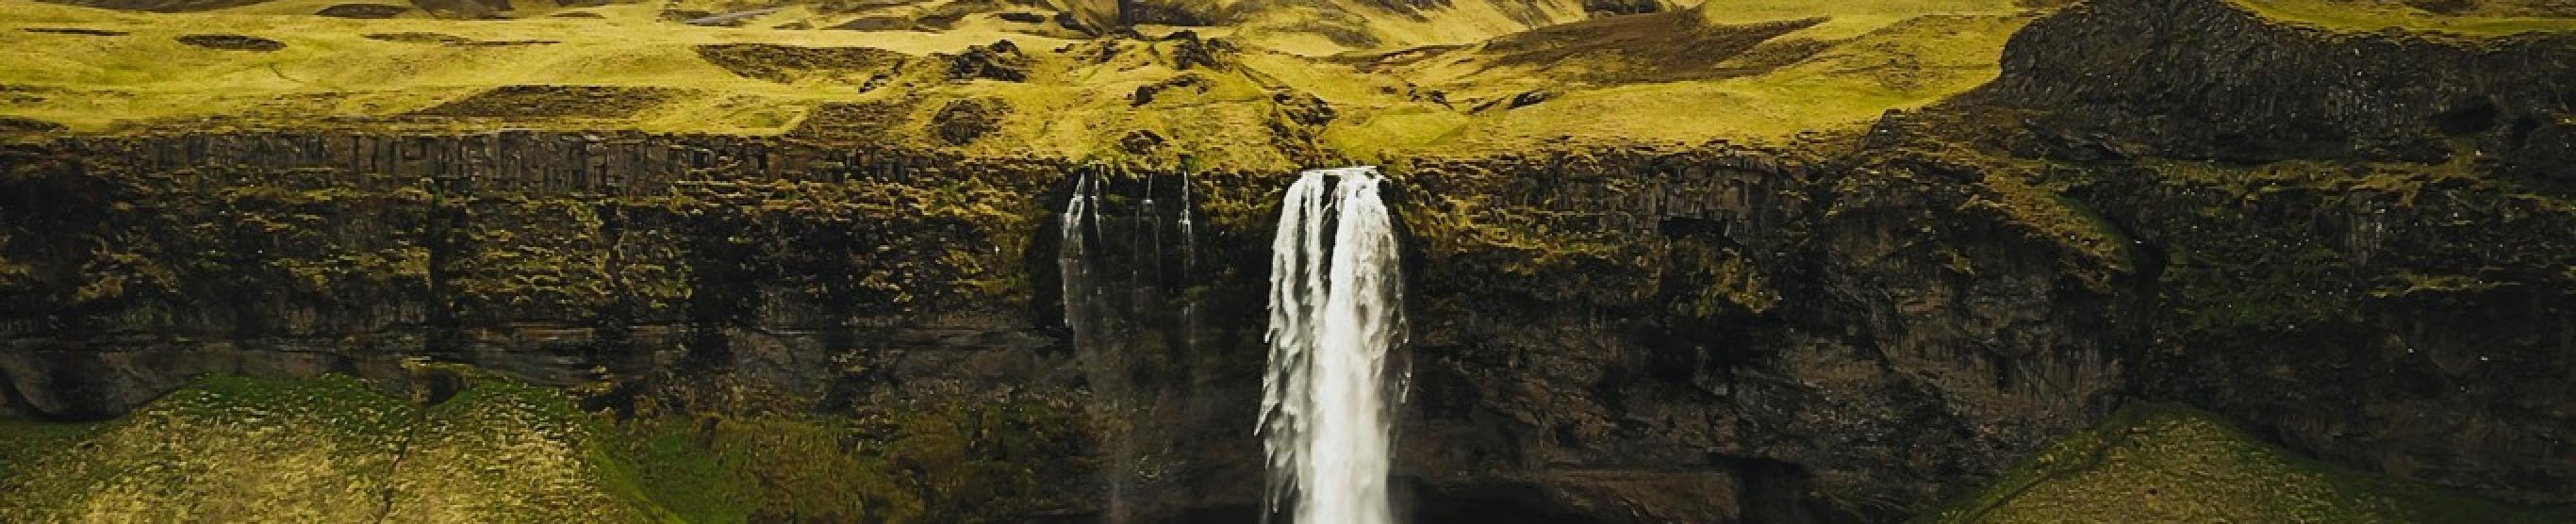 Impronte viaggi - Islanda